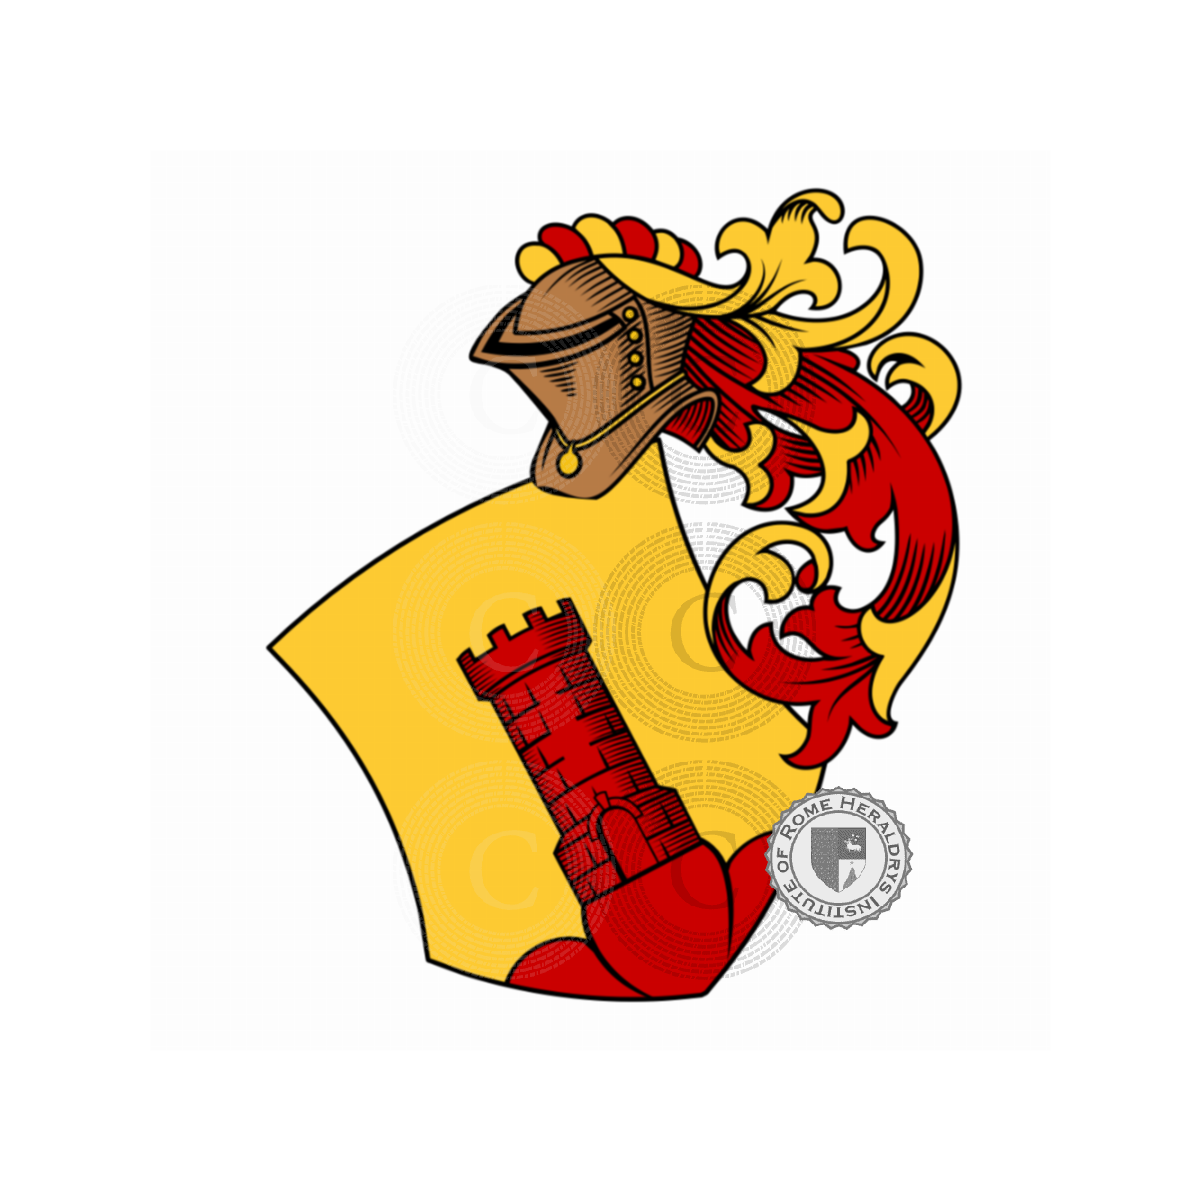 Wappen der FamilieJunker, Junker d'Ober-Conreuth,von Junker und Bigato